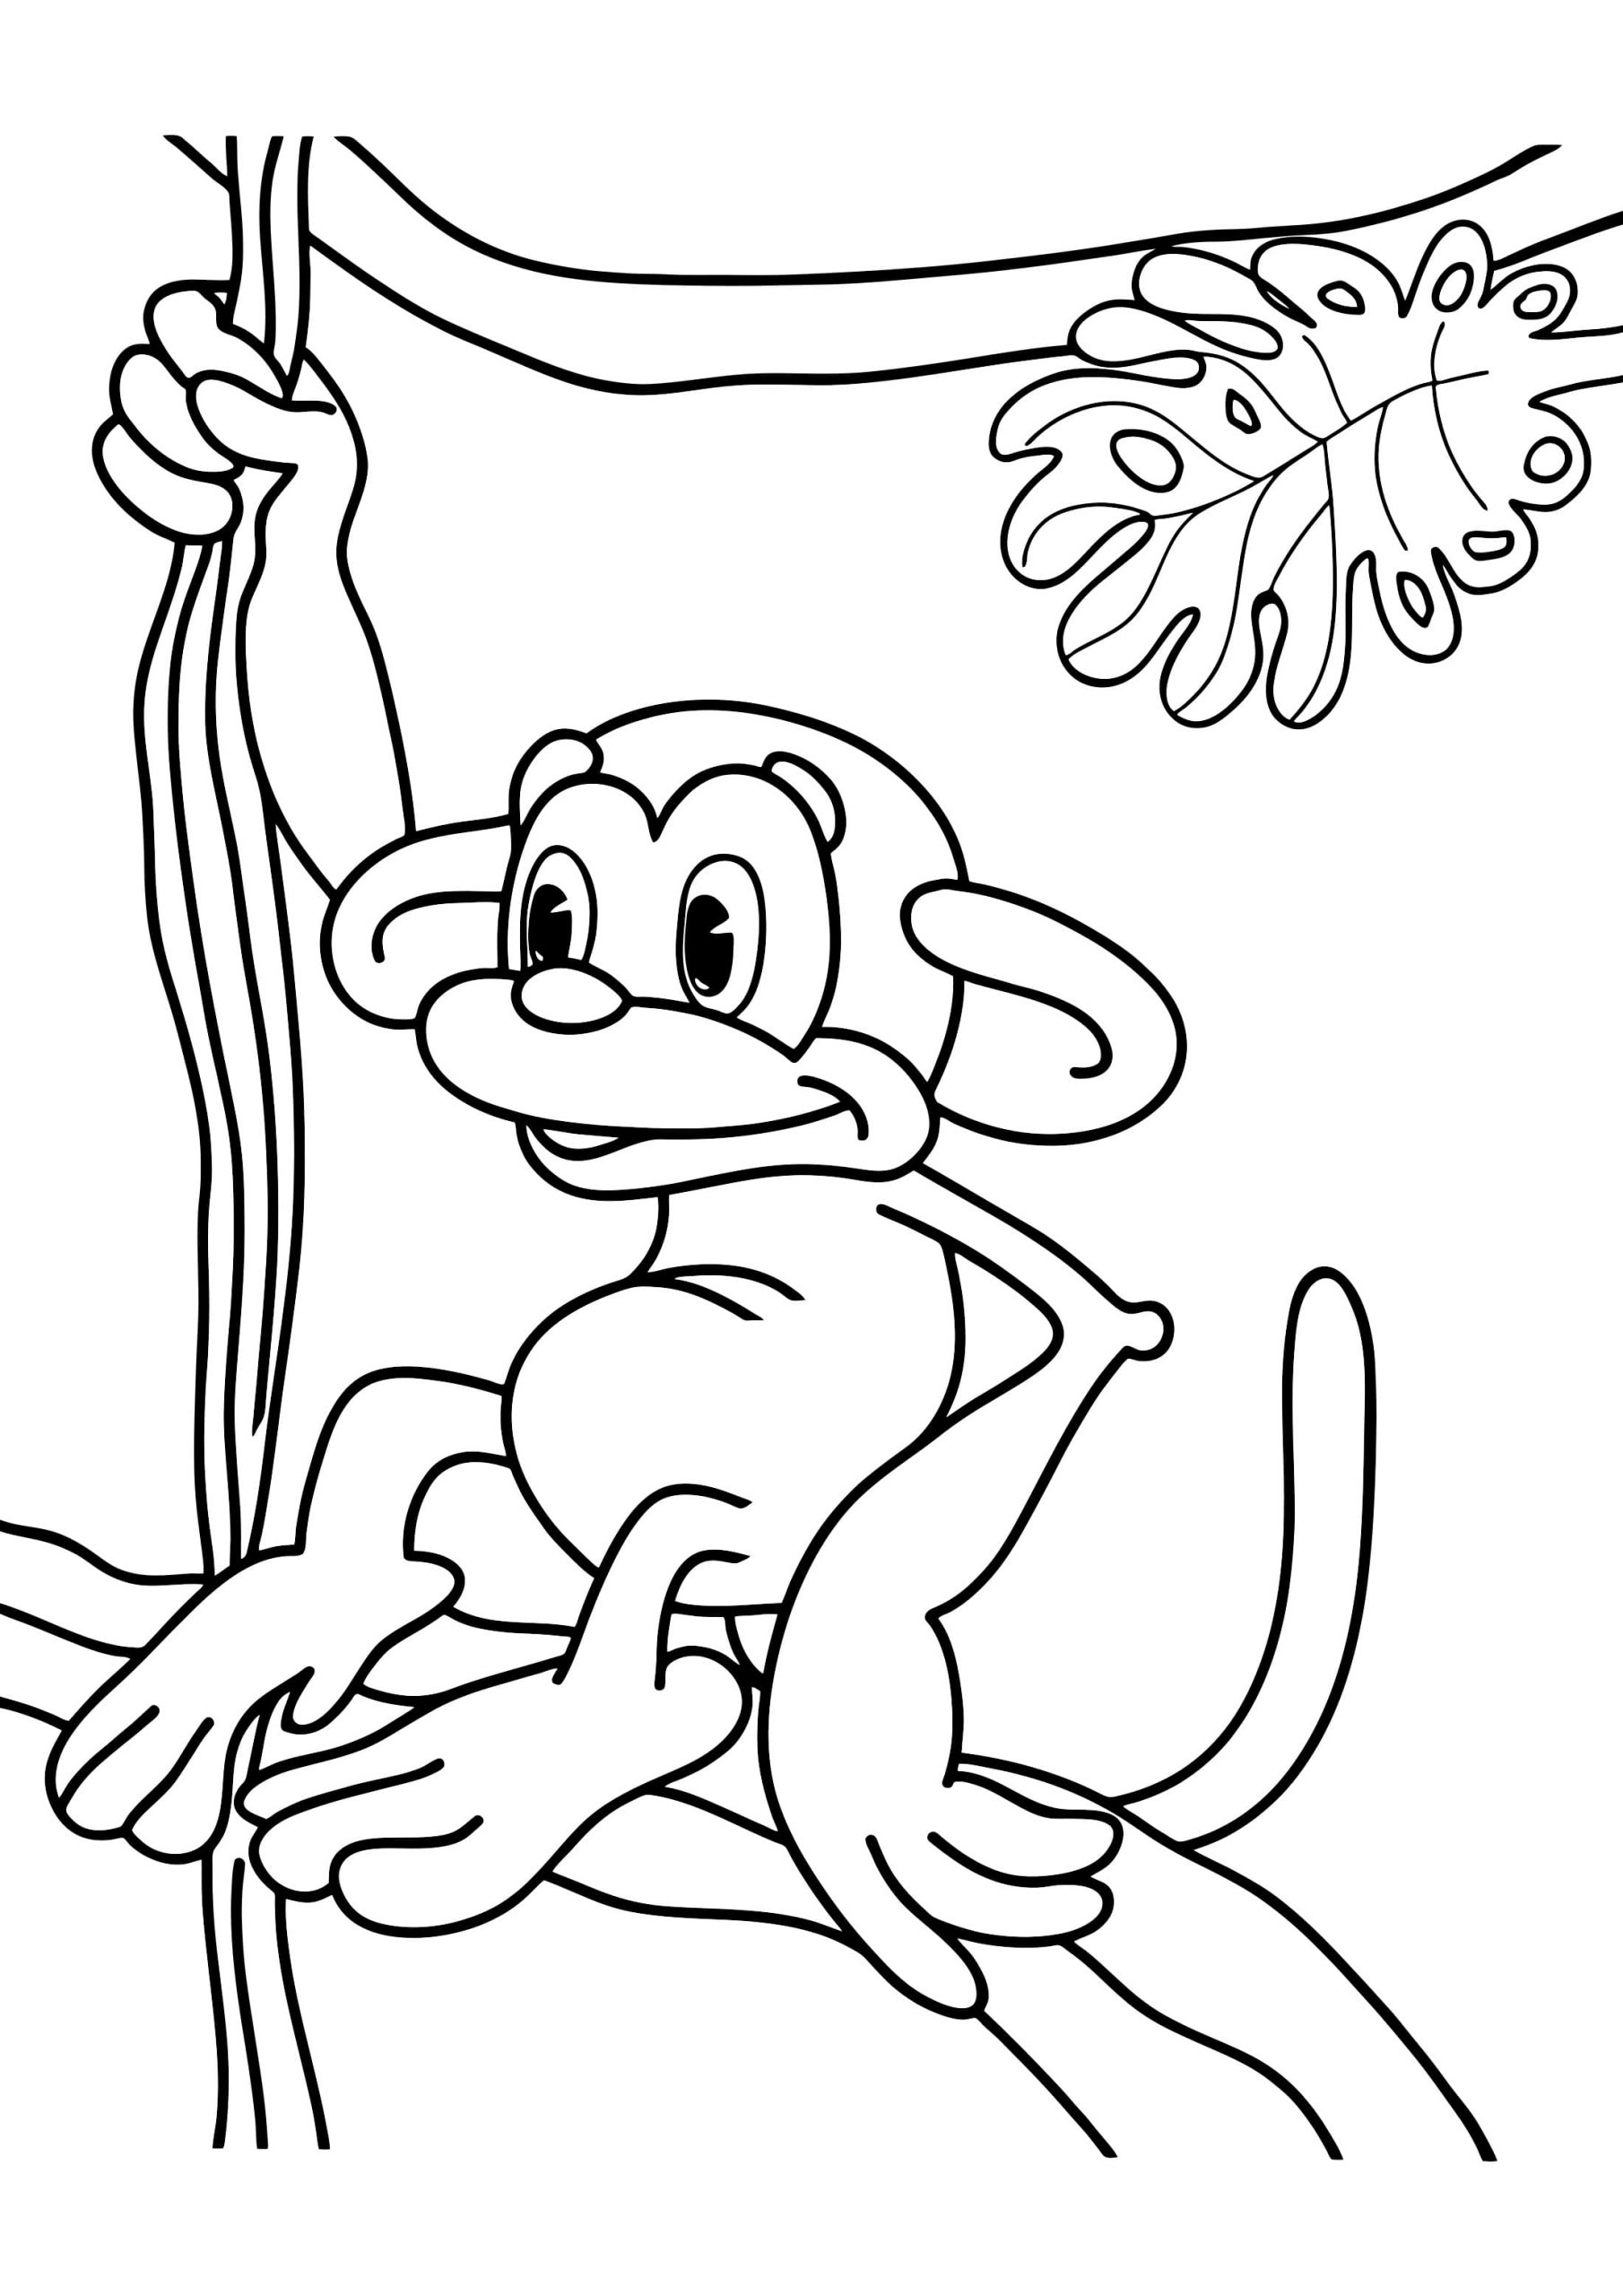 Legrační opice jde dolů po liáně omalovánka